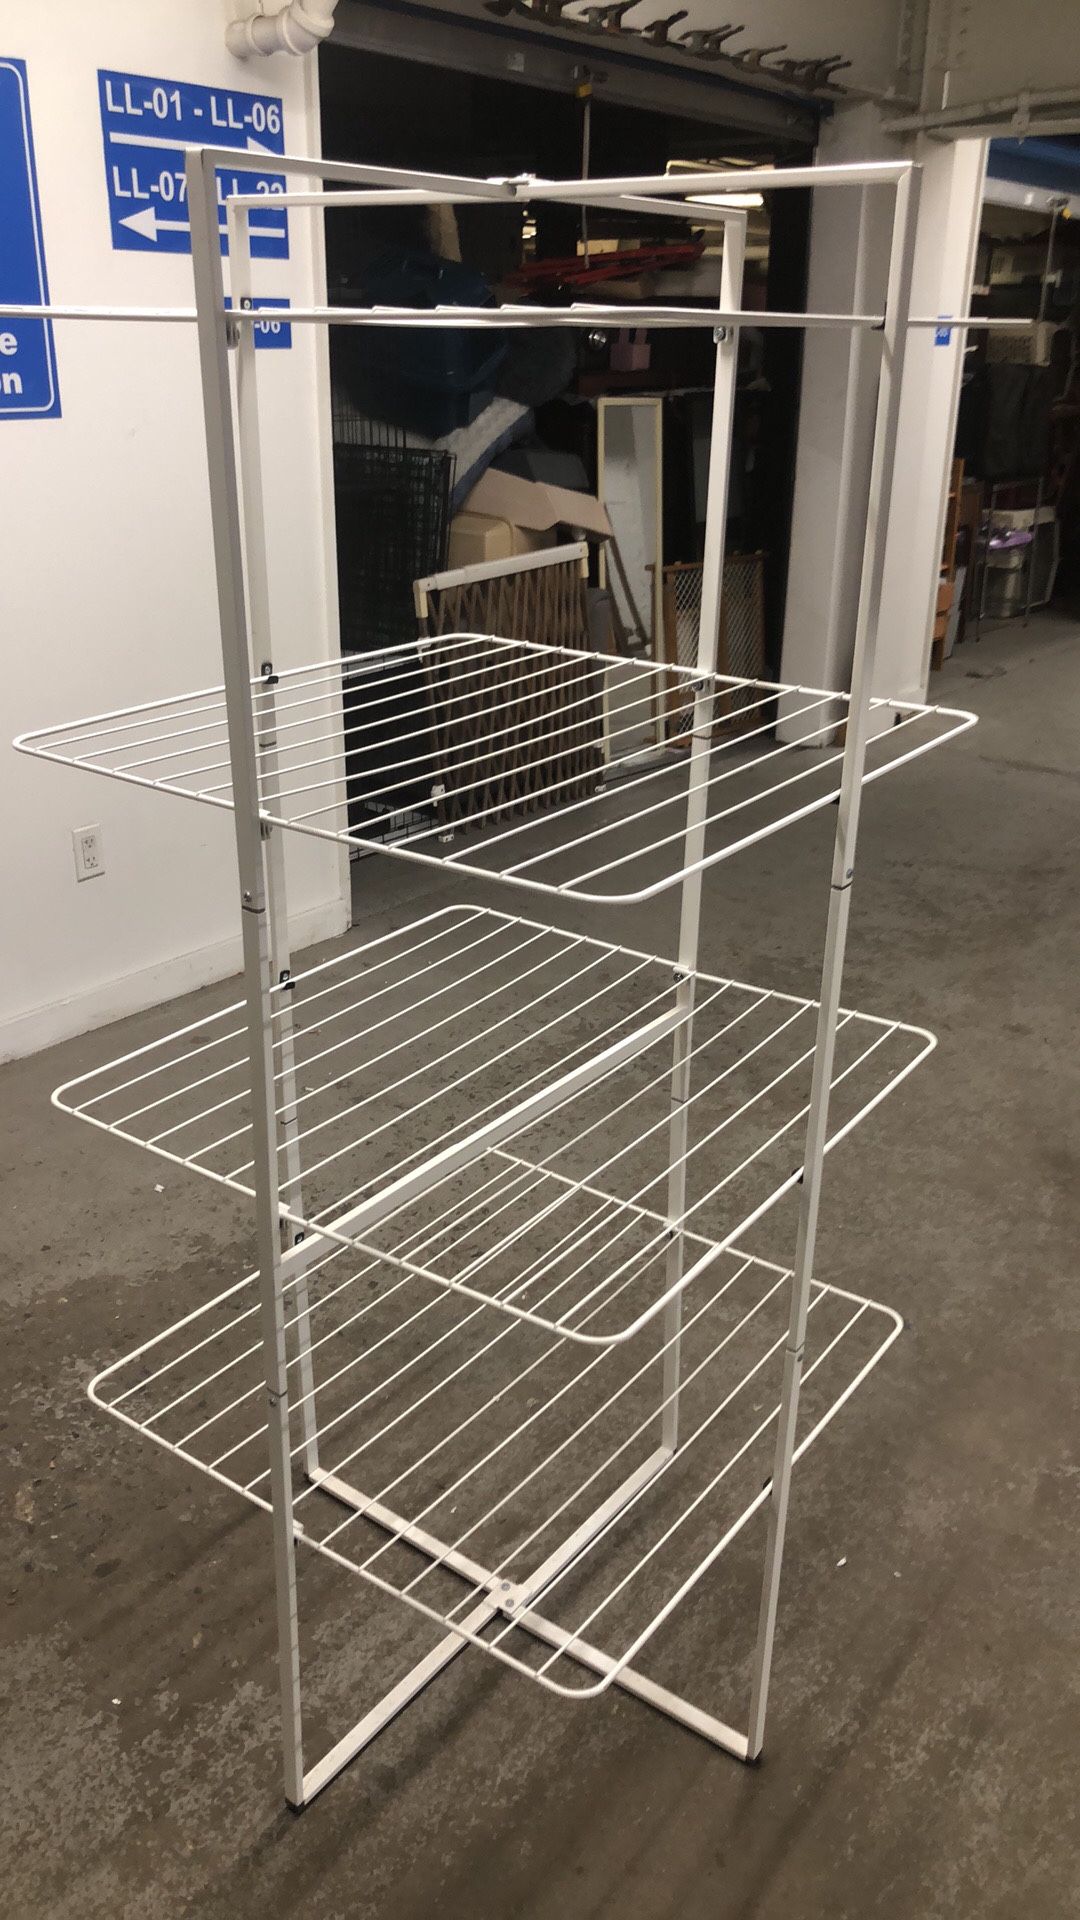 28x28x63”h Folding Dryer Clothing rack